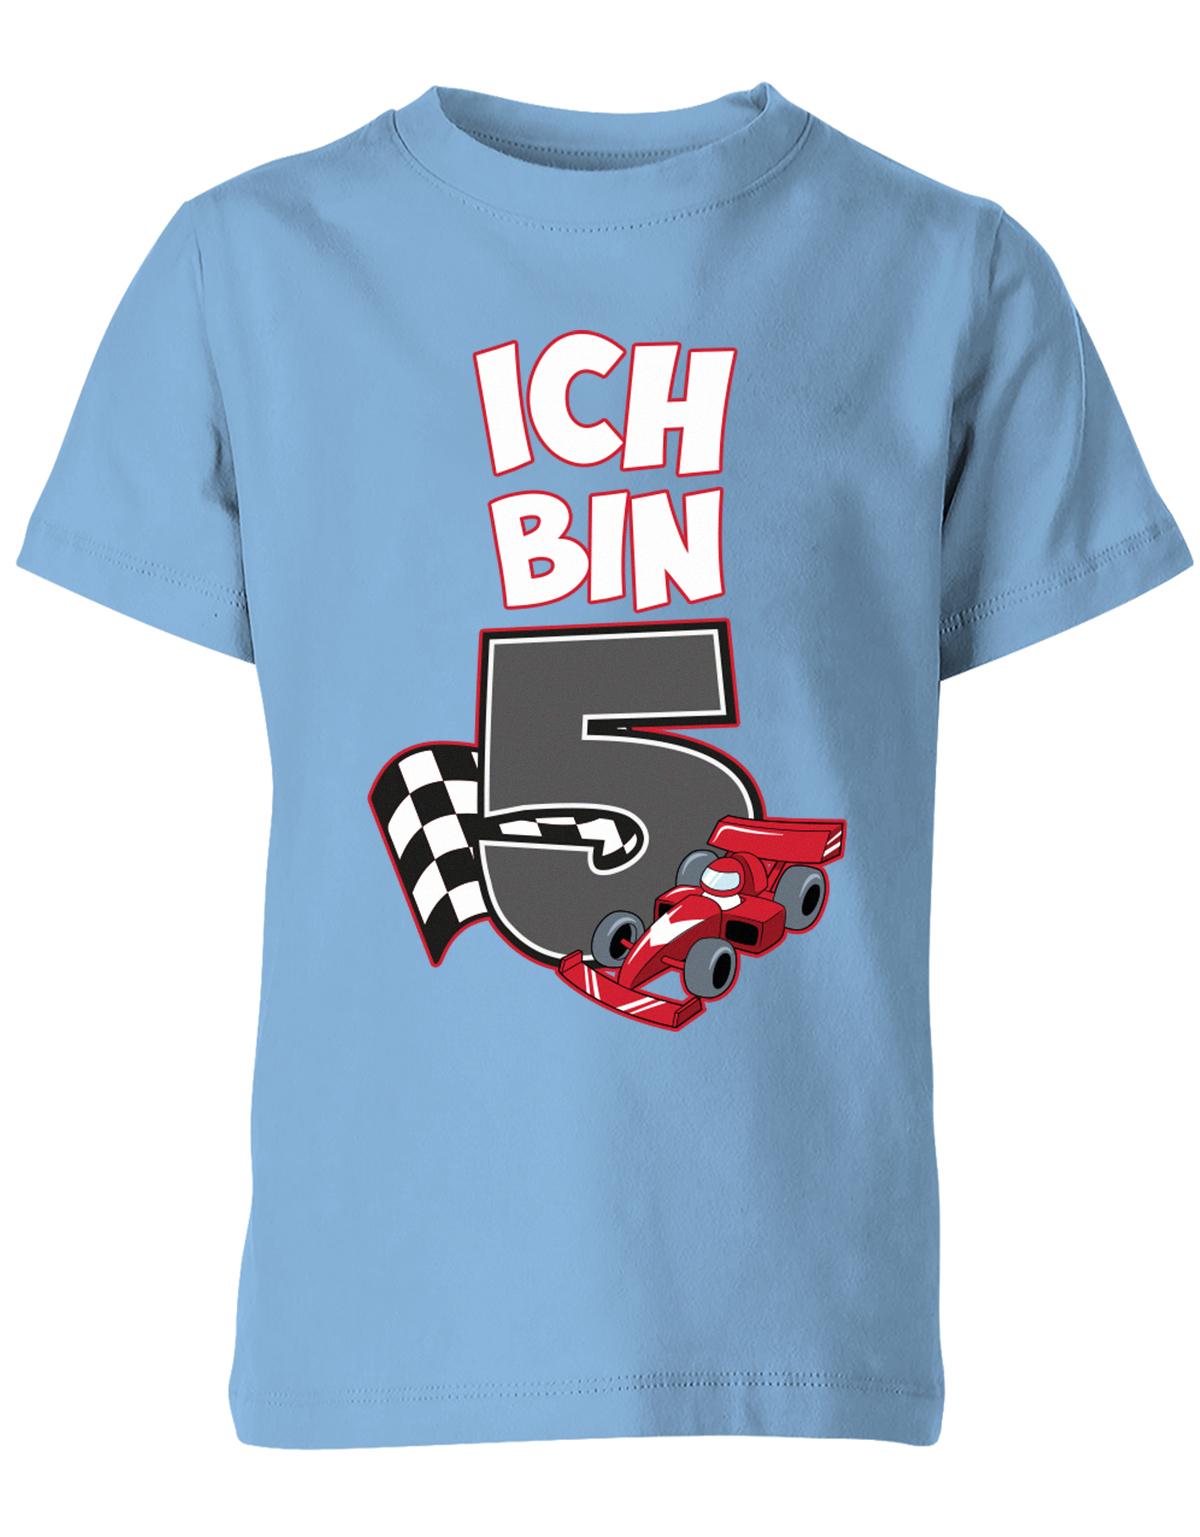 ich-bin-5-autorennen-rennwagen-geburtstag-rennfahrer-kinder-shirt-hellblau